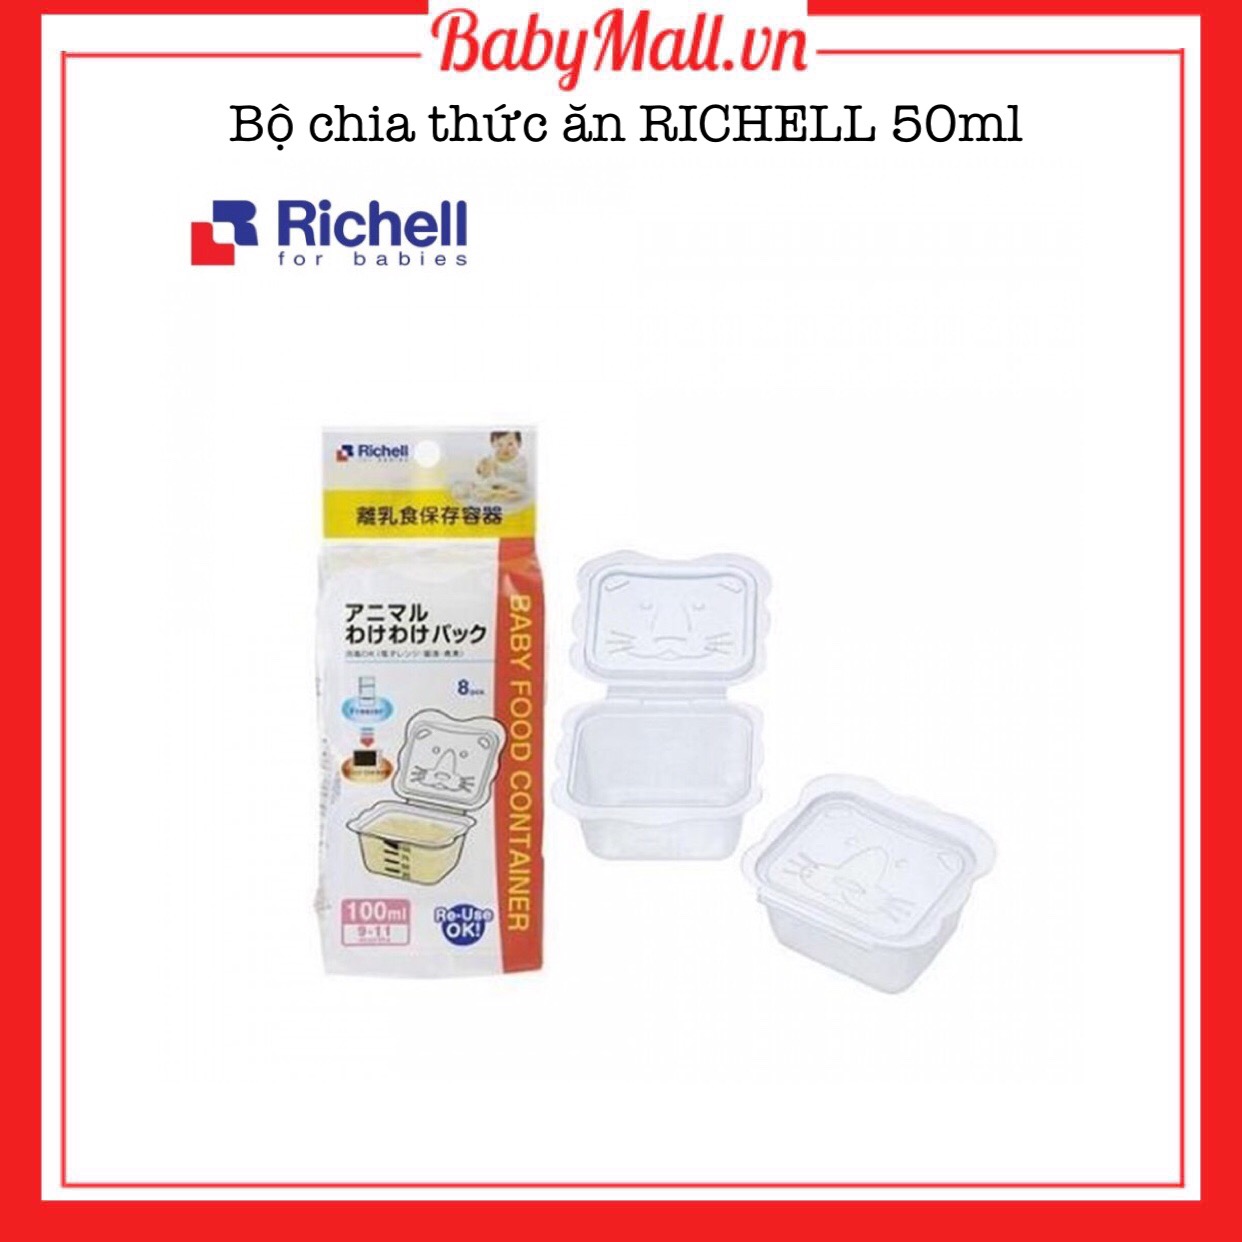 Bộ chia thức ăn Richell 50ml Babymall.vn